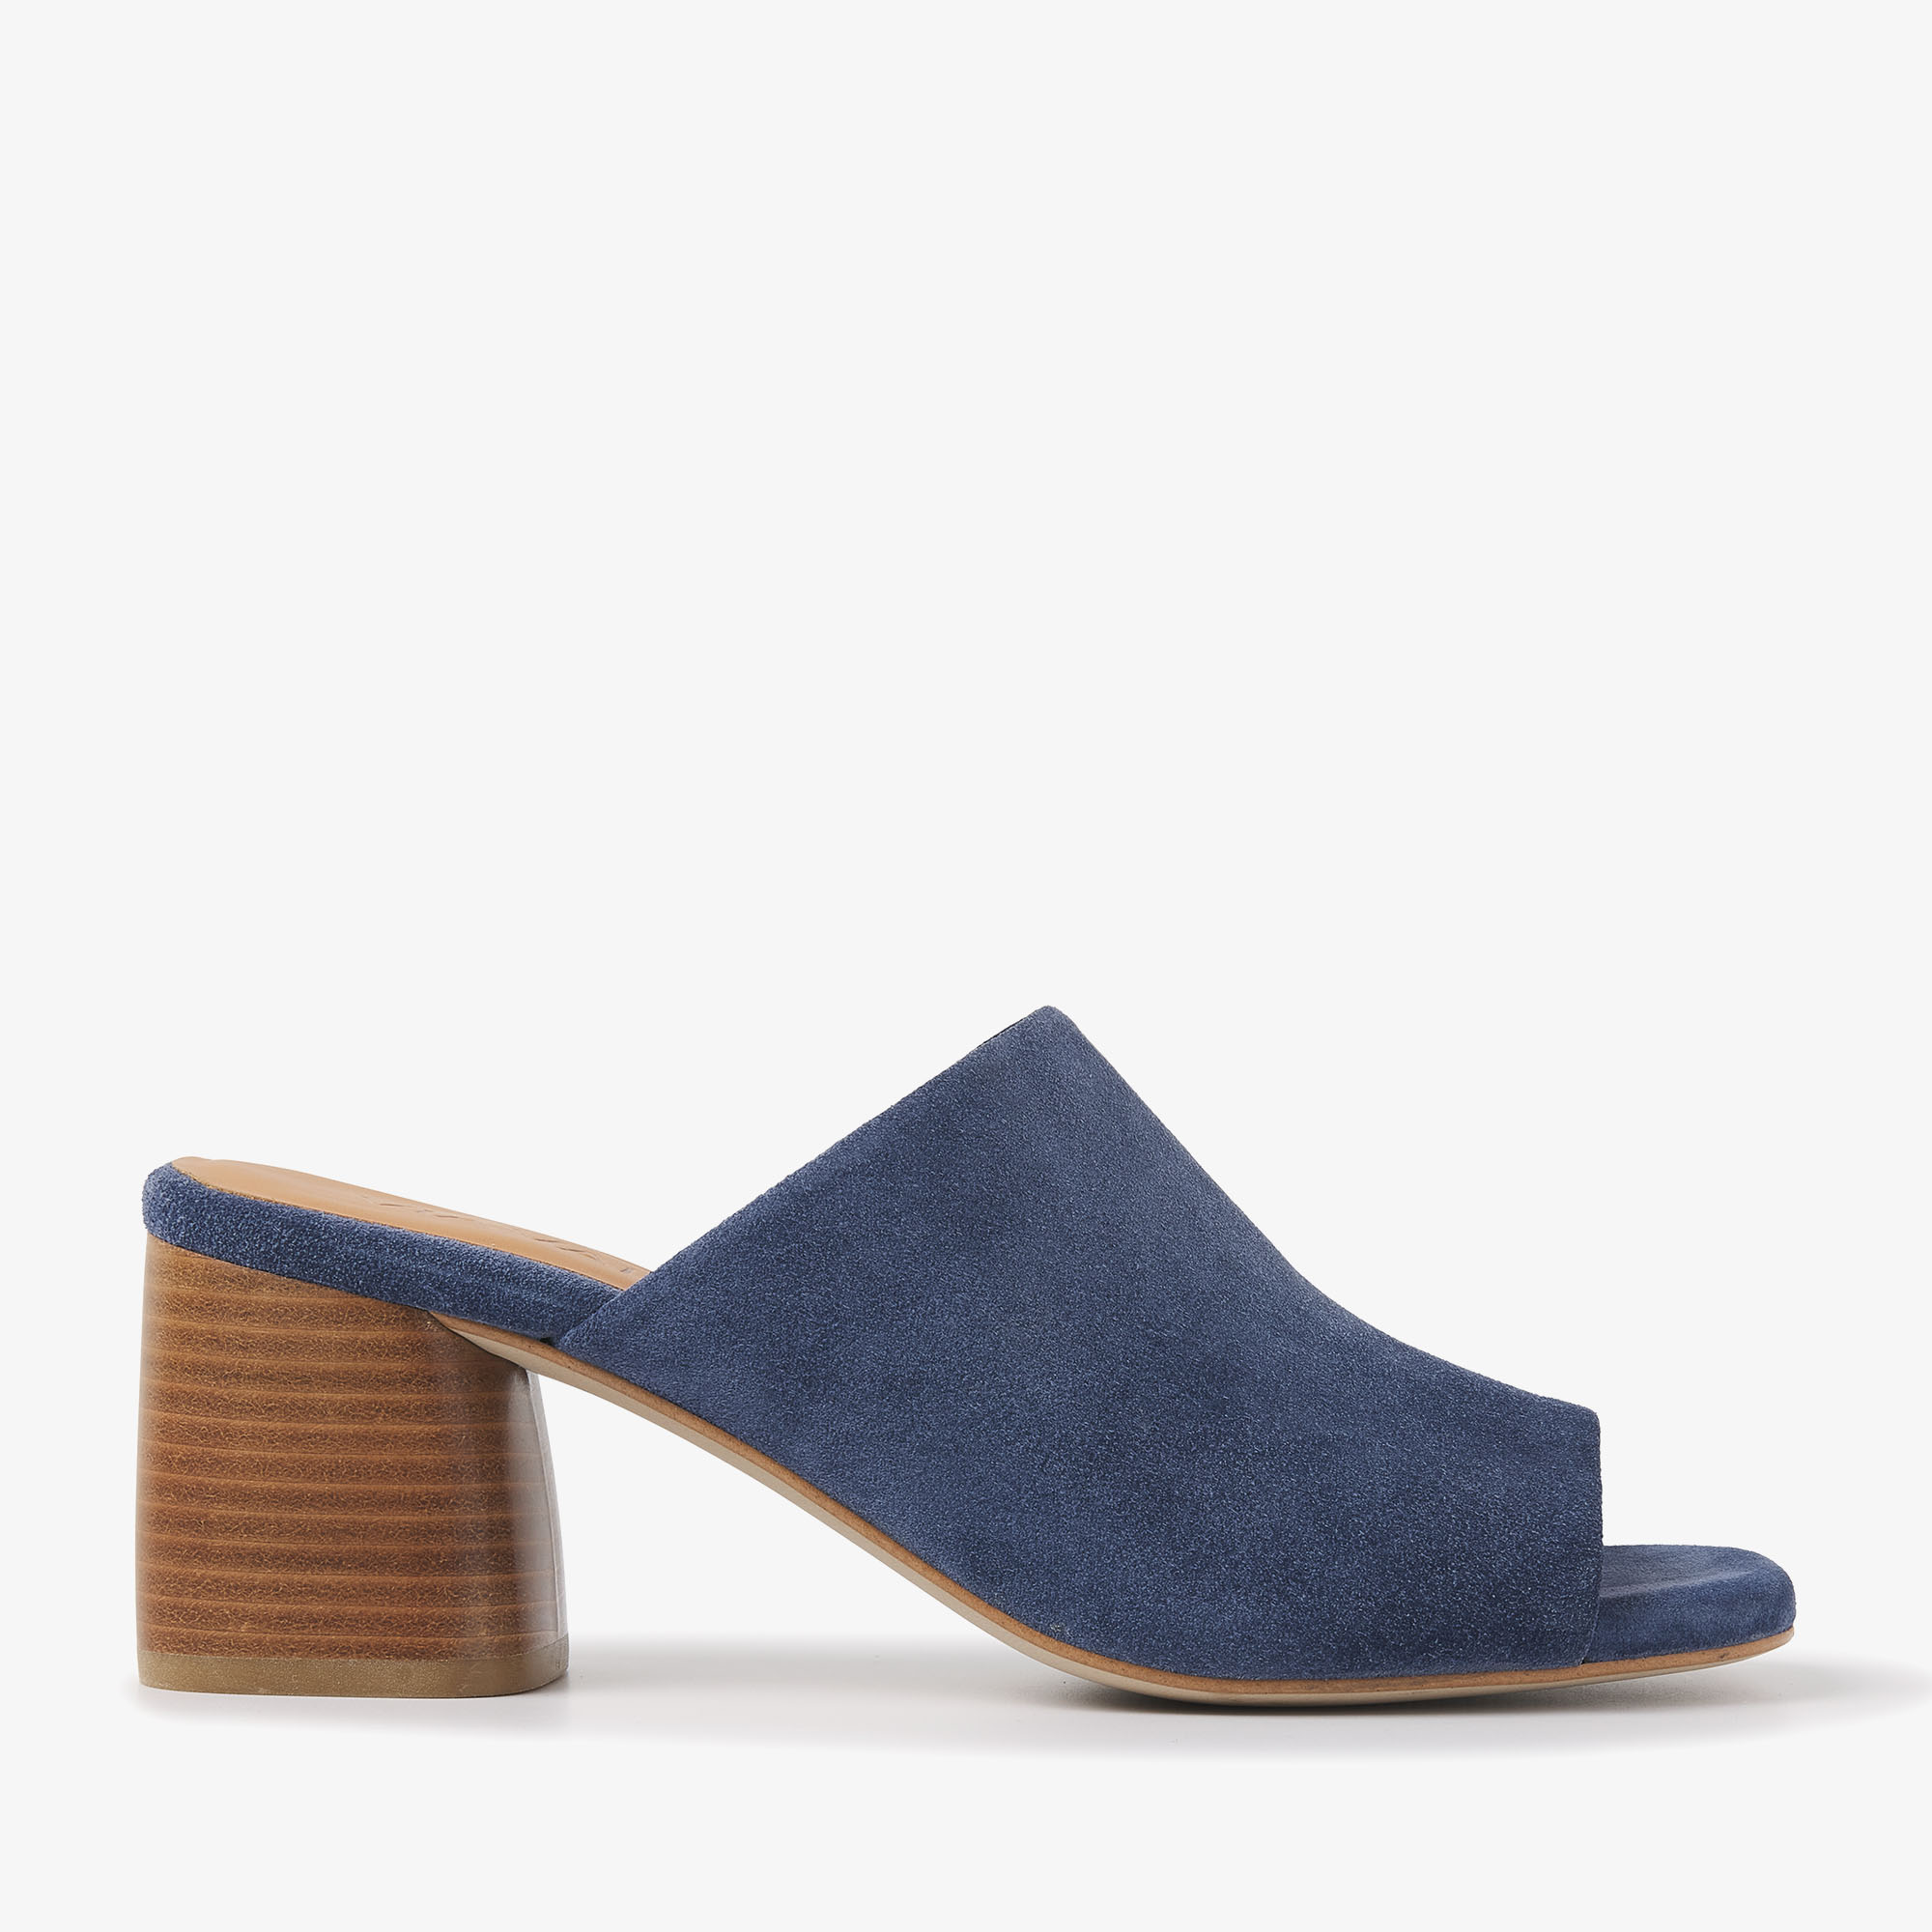 VIA VAI Polly Harper blue sandals